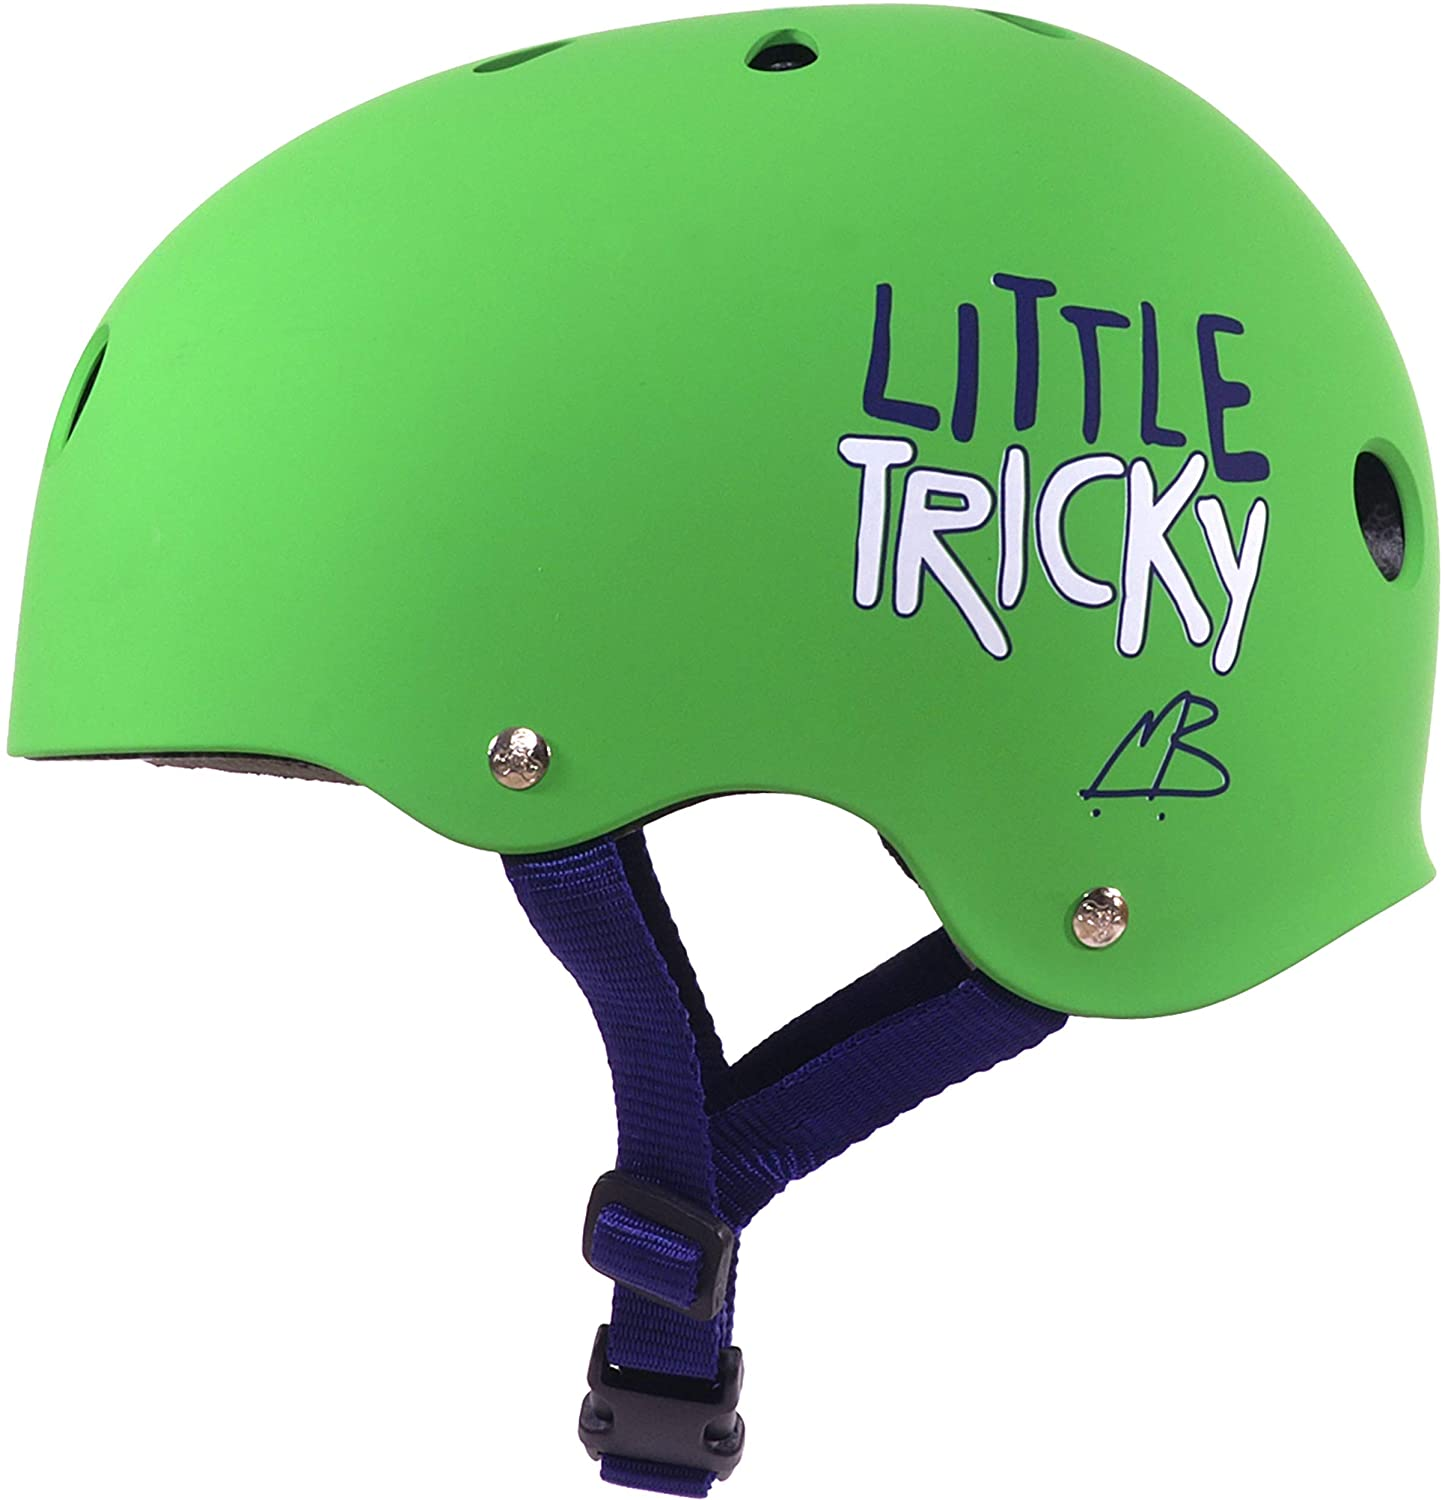 little tricky helmet for kids